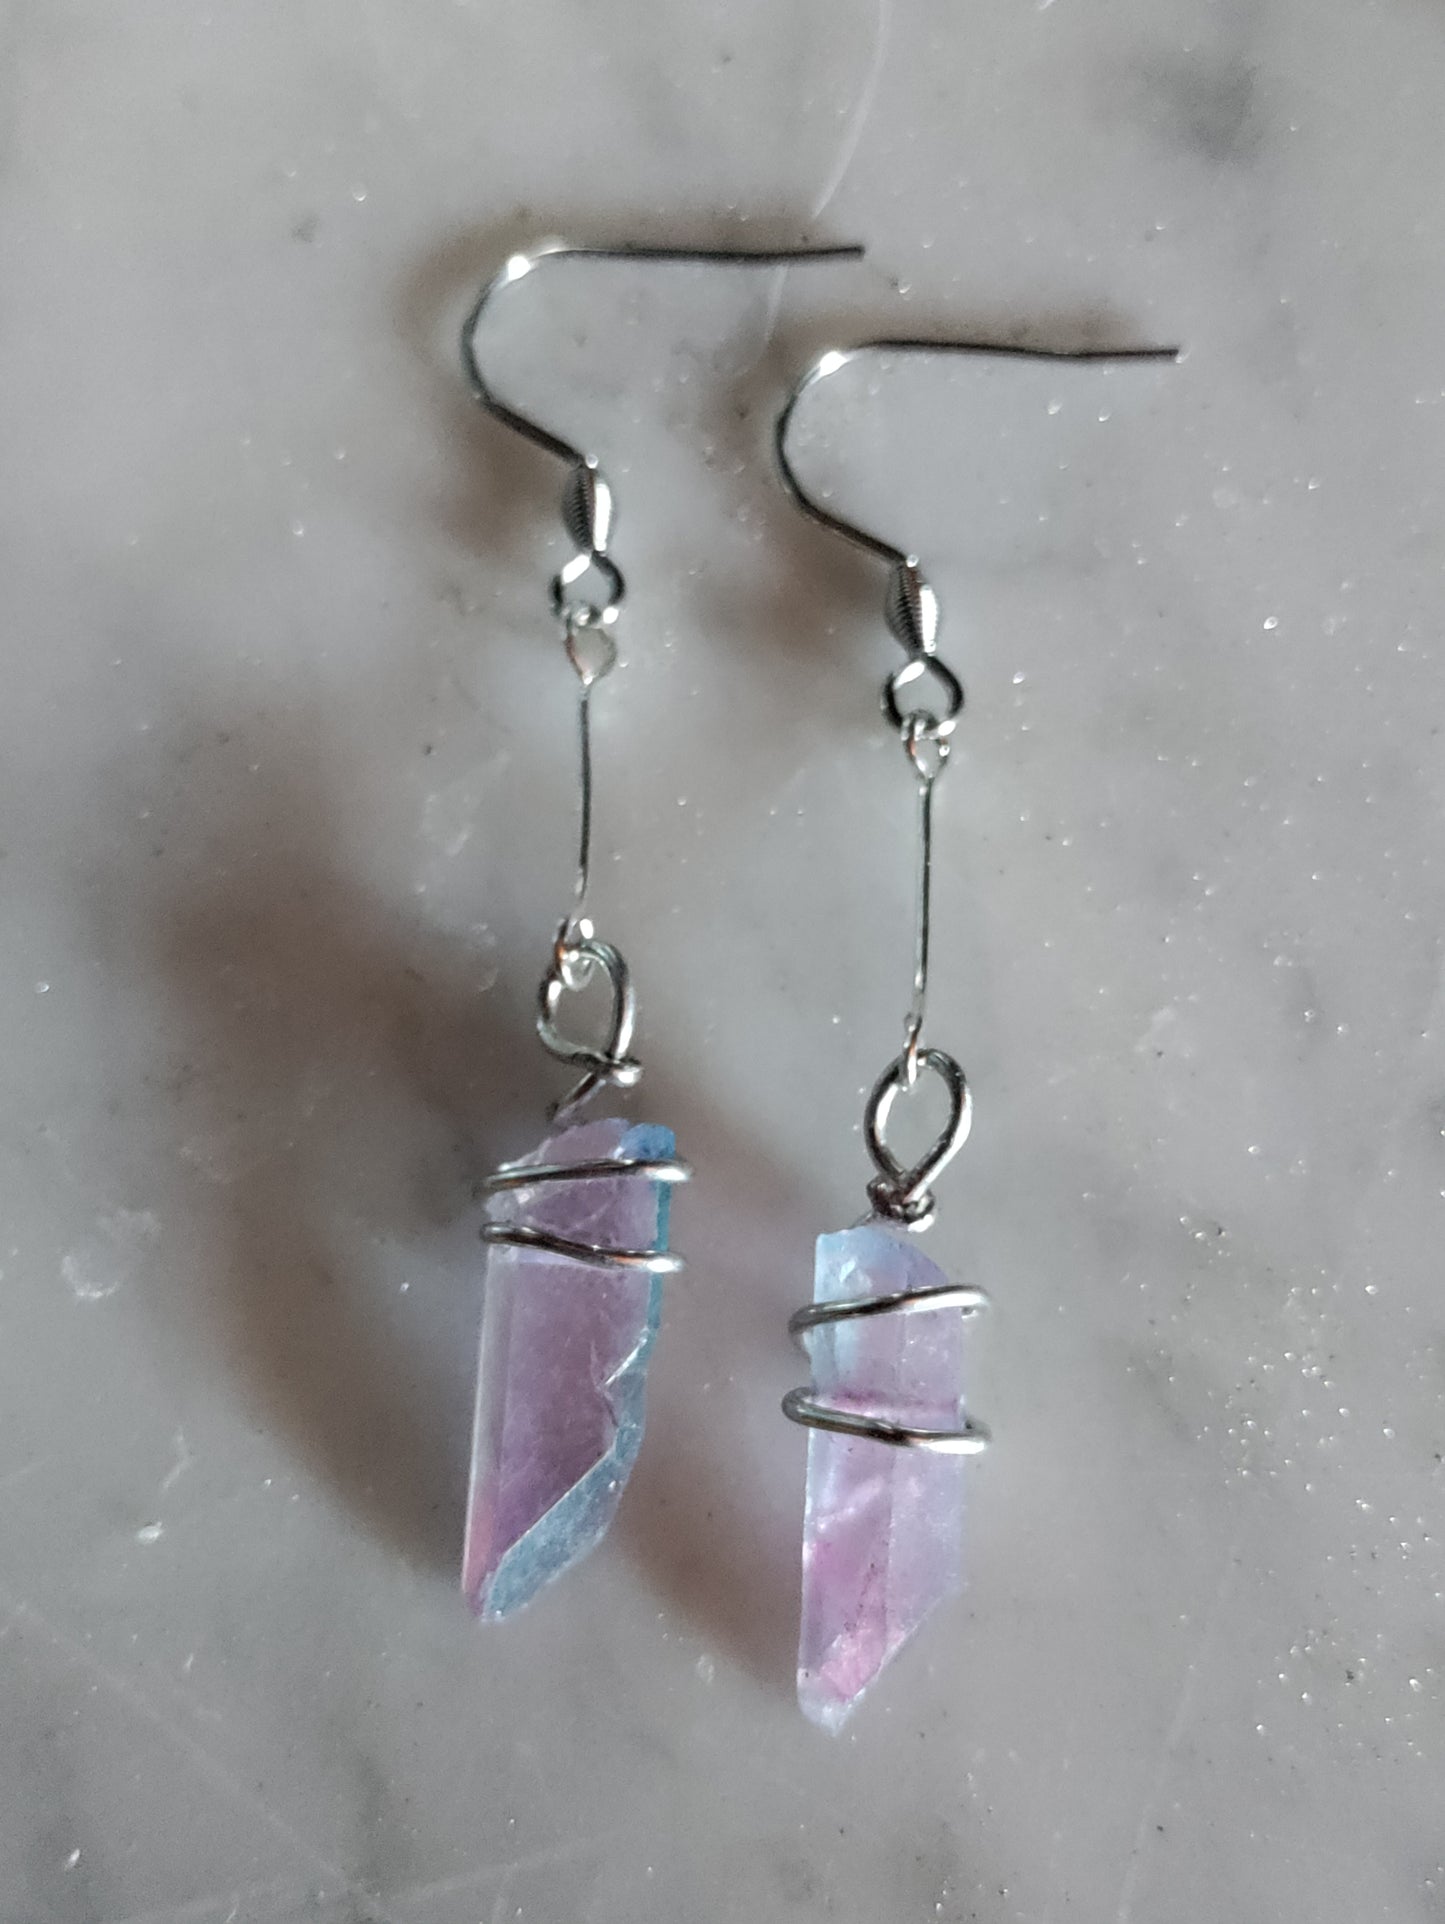 Boucles d'oreilles féériques avec cristaux bleu et rose LEIA&CO